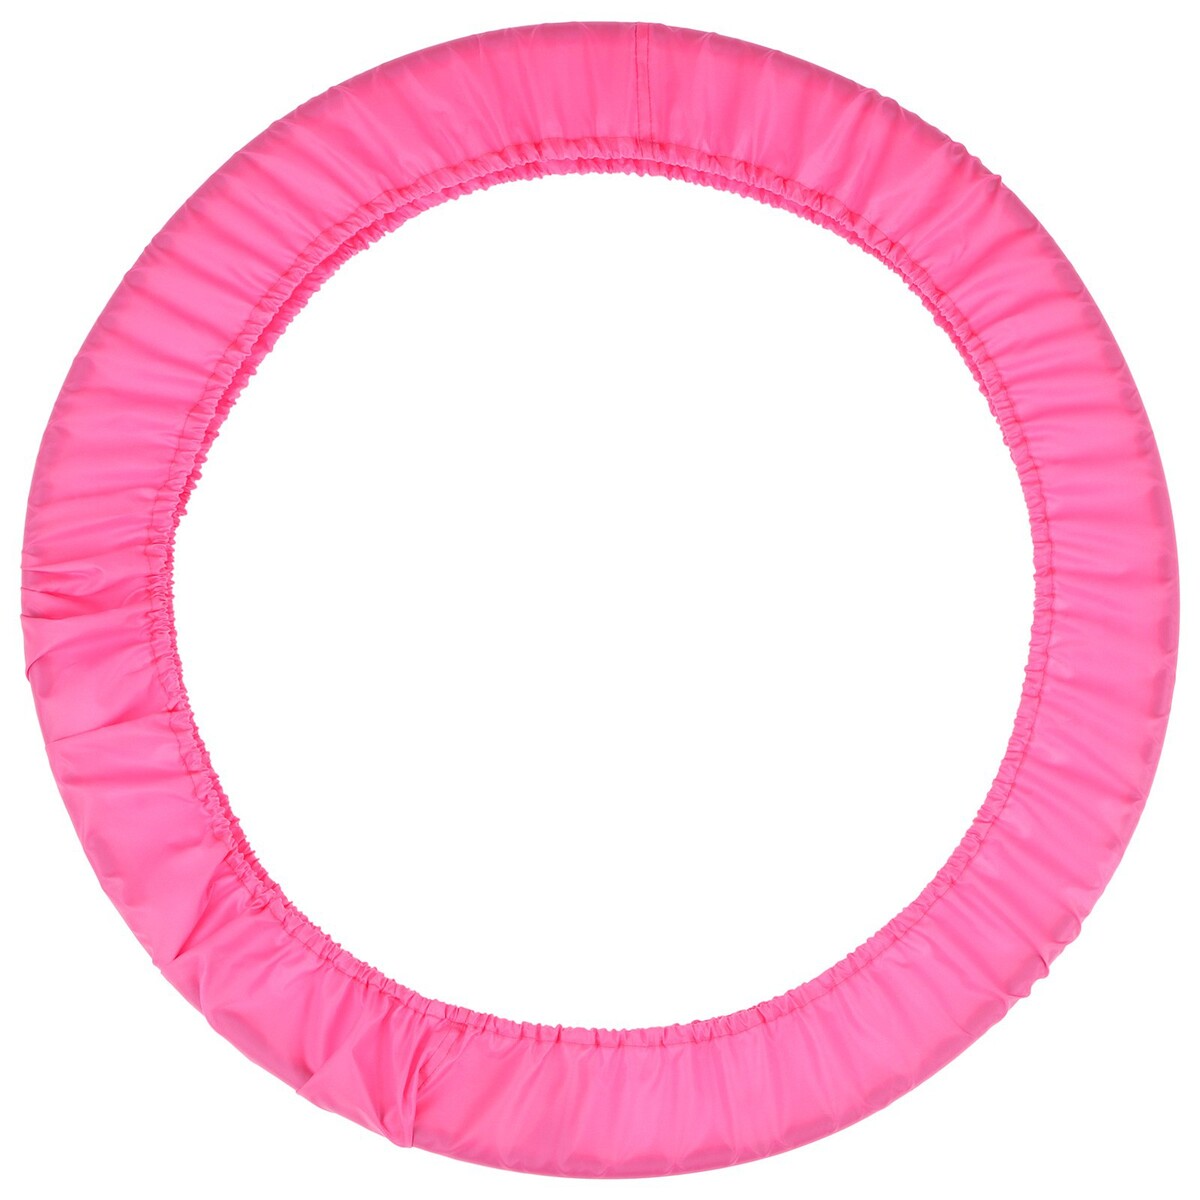 Чехол для обруча grace dance, d=90 см, цвет розовый чехол для мяча гимнастического indigo sm 135 p розовый